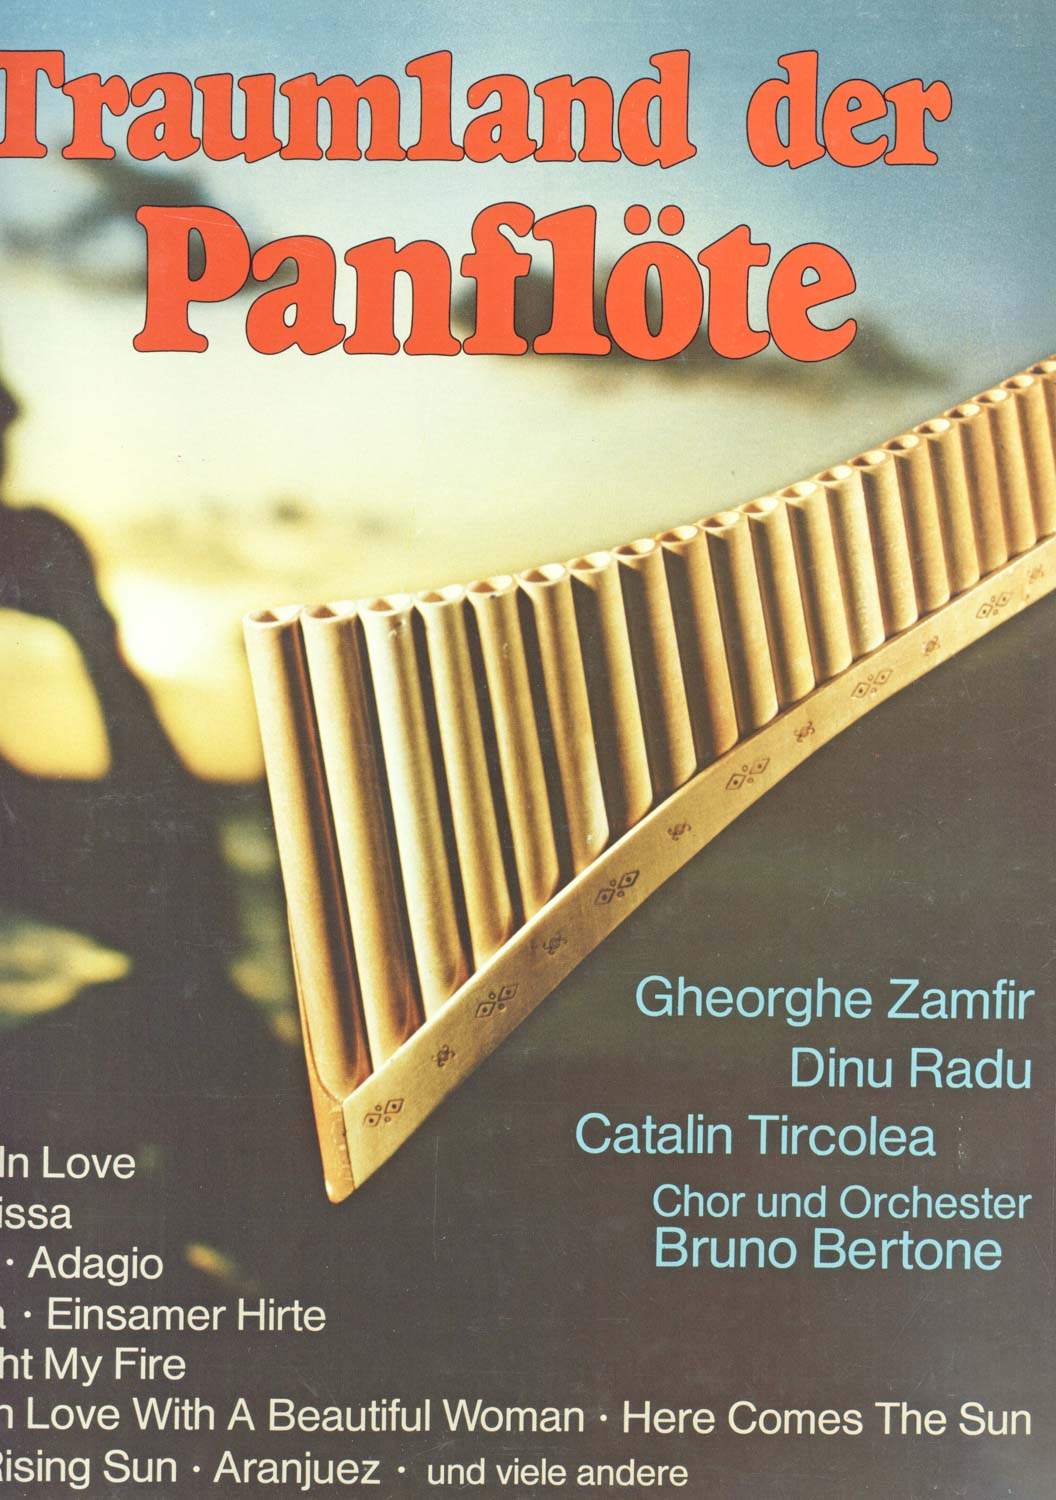 Gheorge Zamfir, Catalin Tircolea, Dinu Radu, Chor und Orchester Bruno Bertone  Im Traumland der Panflöte [3-LP Box] (DK 290 12)  *LP 12'' (Vinyl)*. 